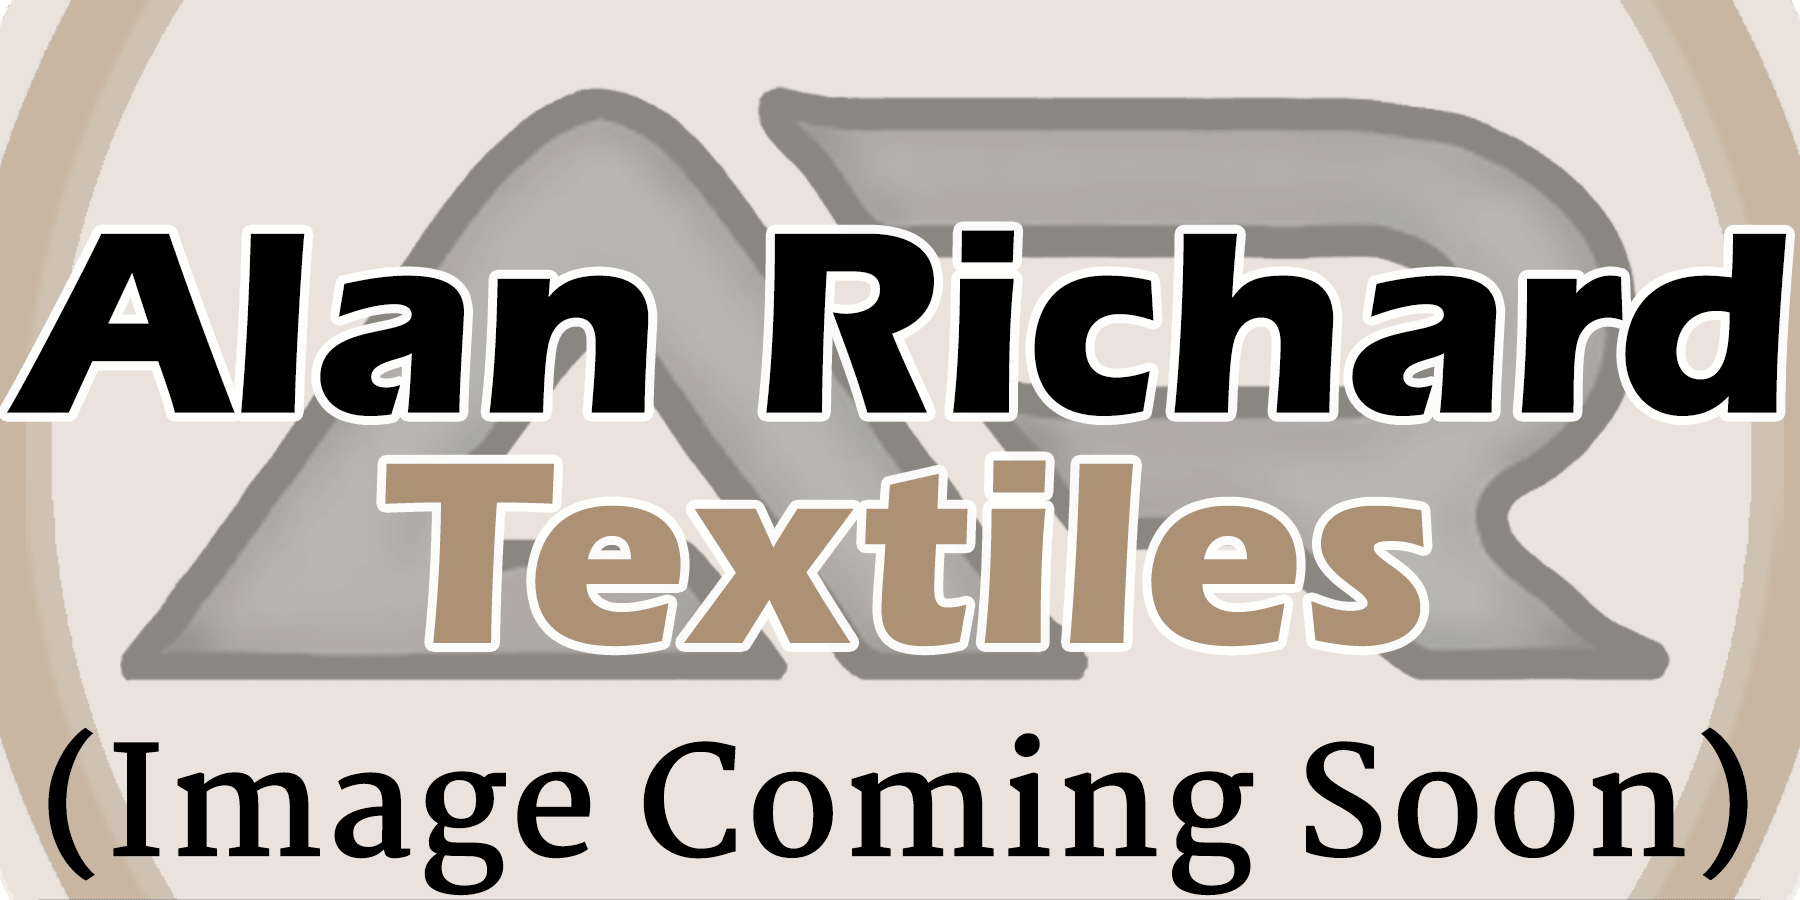 C.S. Osborne Handle For 1011 - Alan Richard Textiles, LTD C.S. Osborne